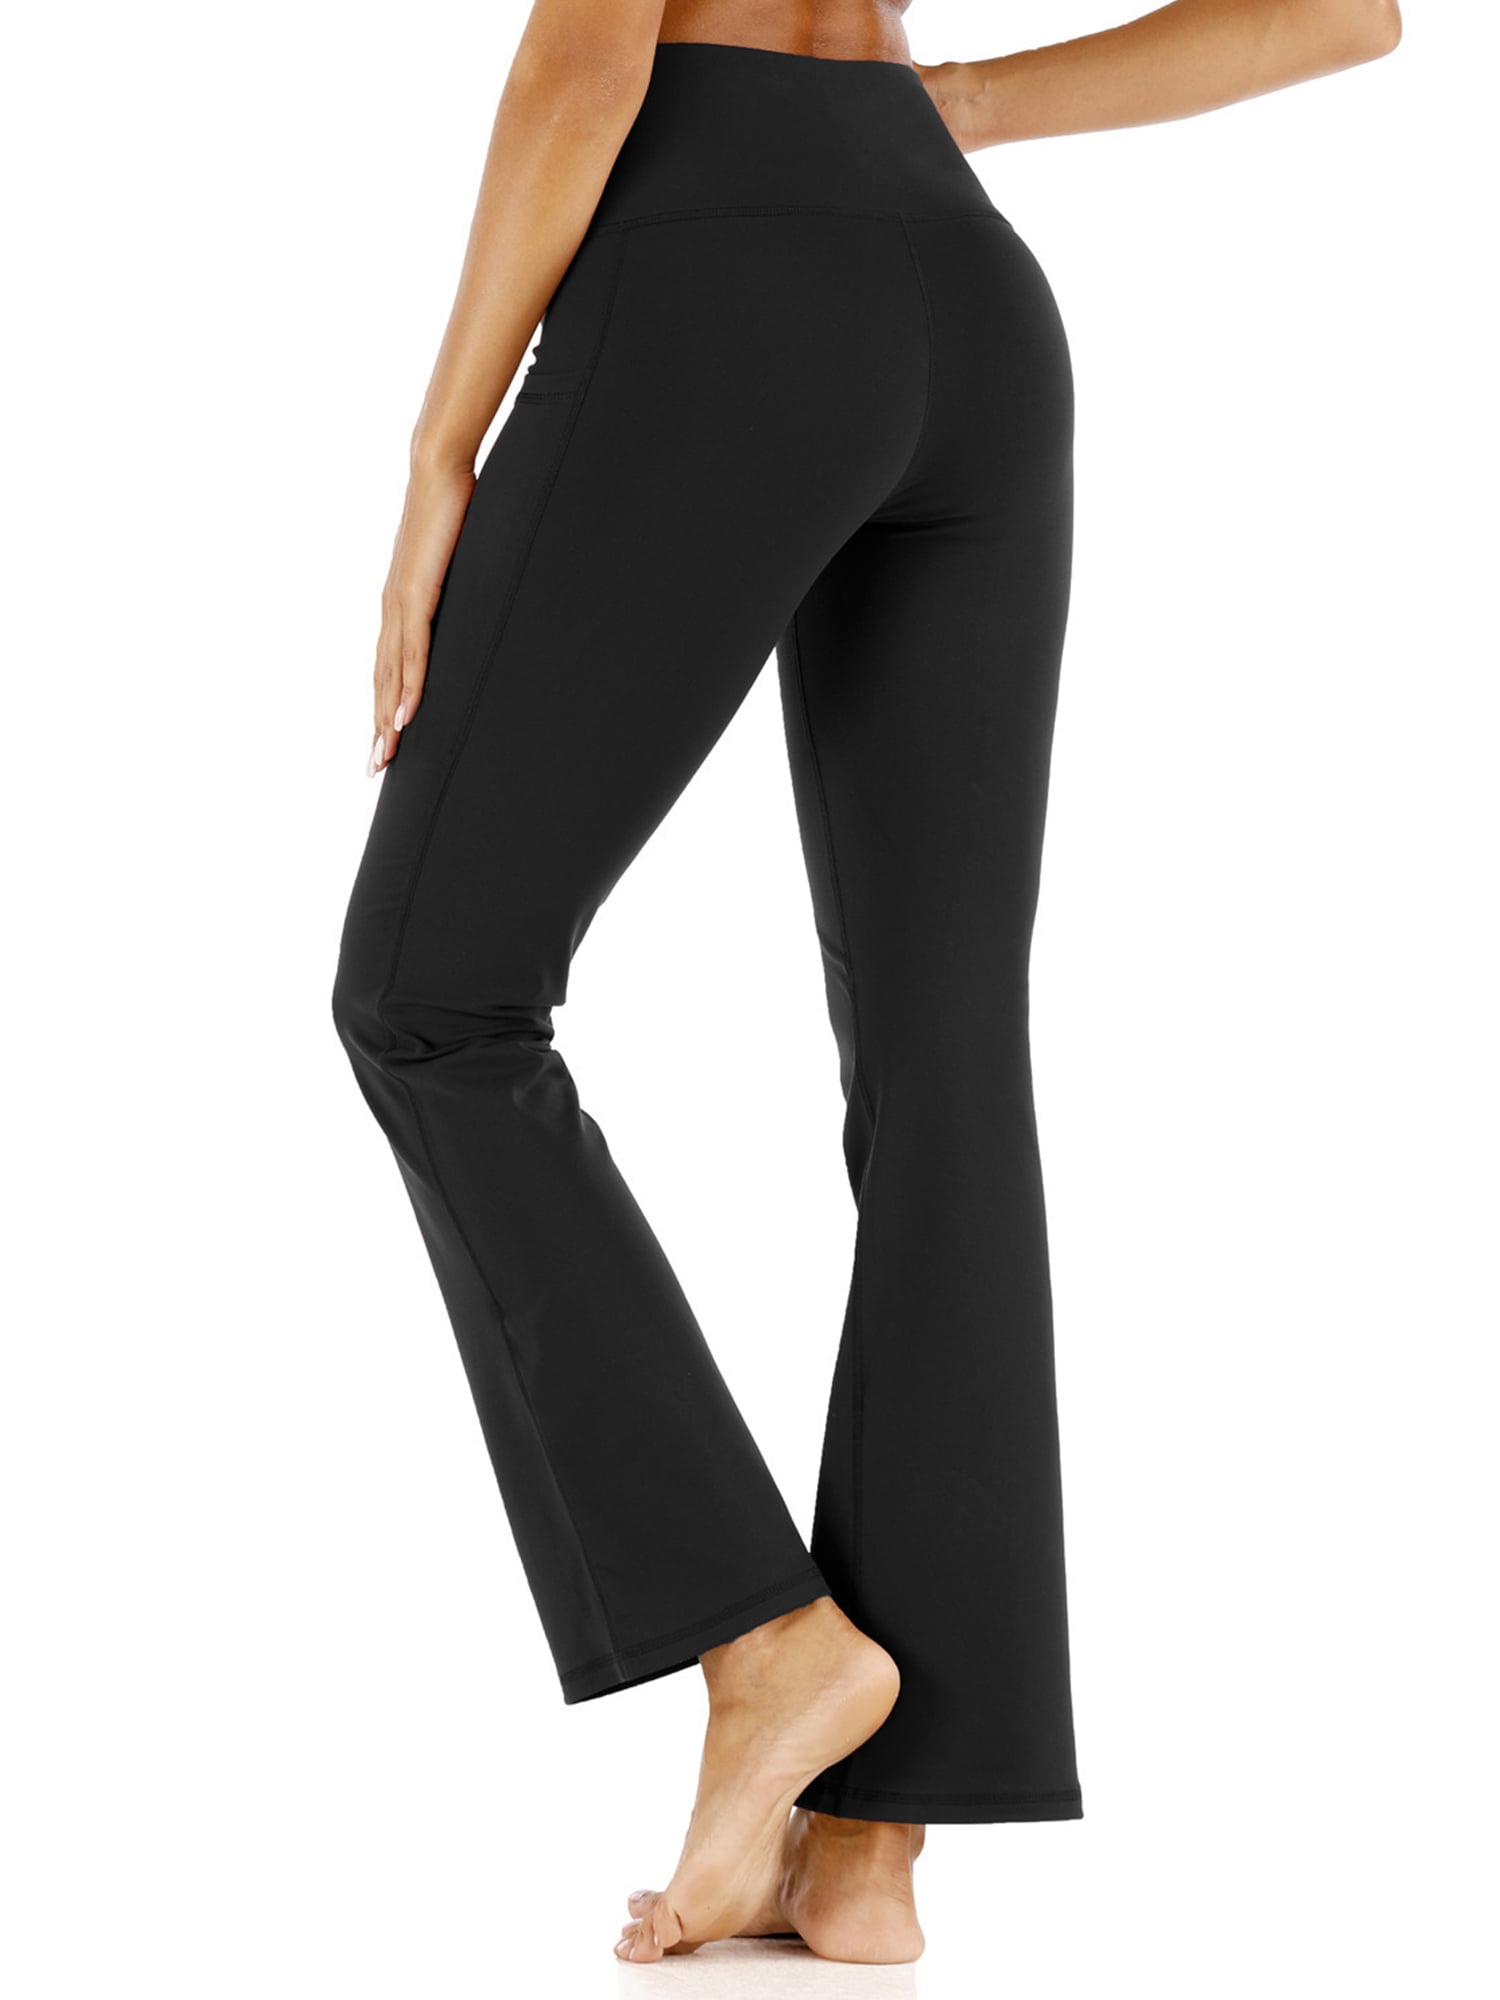 Women Bootcut Yoga Pants Bootleg High Waist Workout Casual Sport Fitness Trouser 